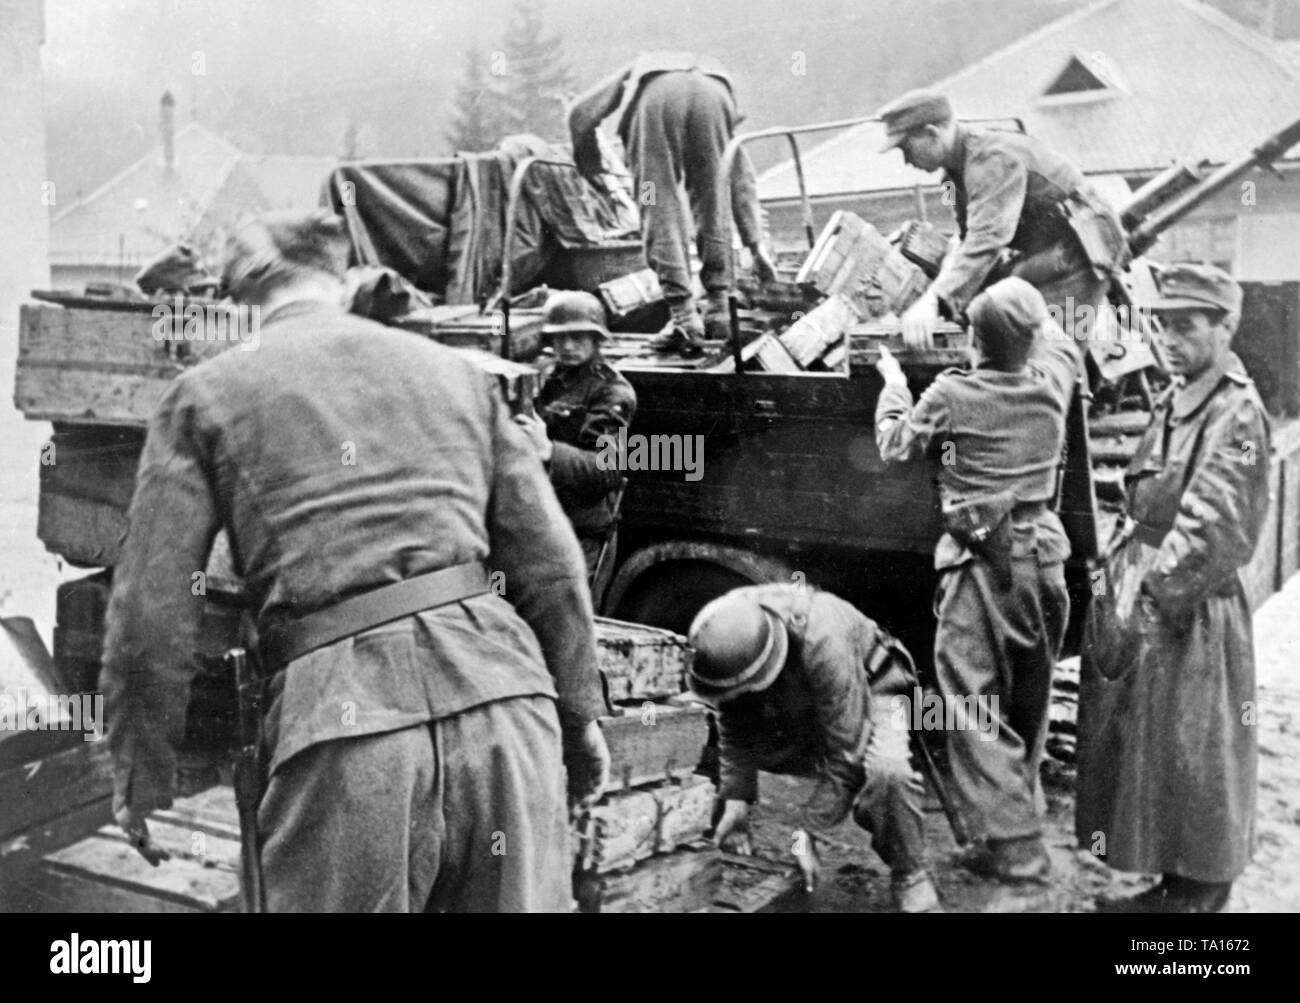 Nach der Niederschlagung des Slowakischen Nationalen Aufstandes, der Wehrmacht, die Waffen, Material und Munition für den Widerstand. Nach der Slowakischen Nationalen Aufstandes im August 1944, Slowakei verliert seine Souveränität. Stockfoto